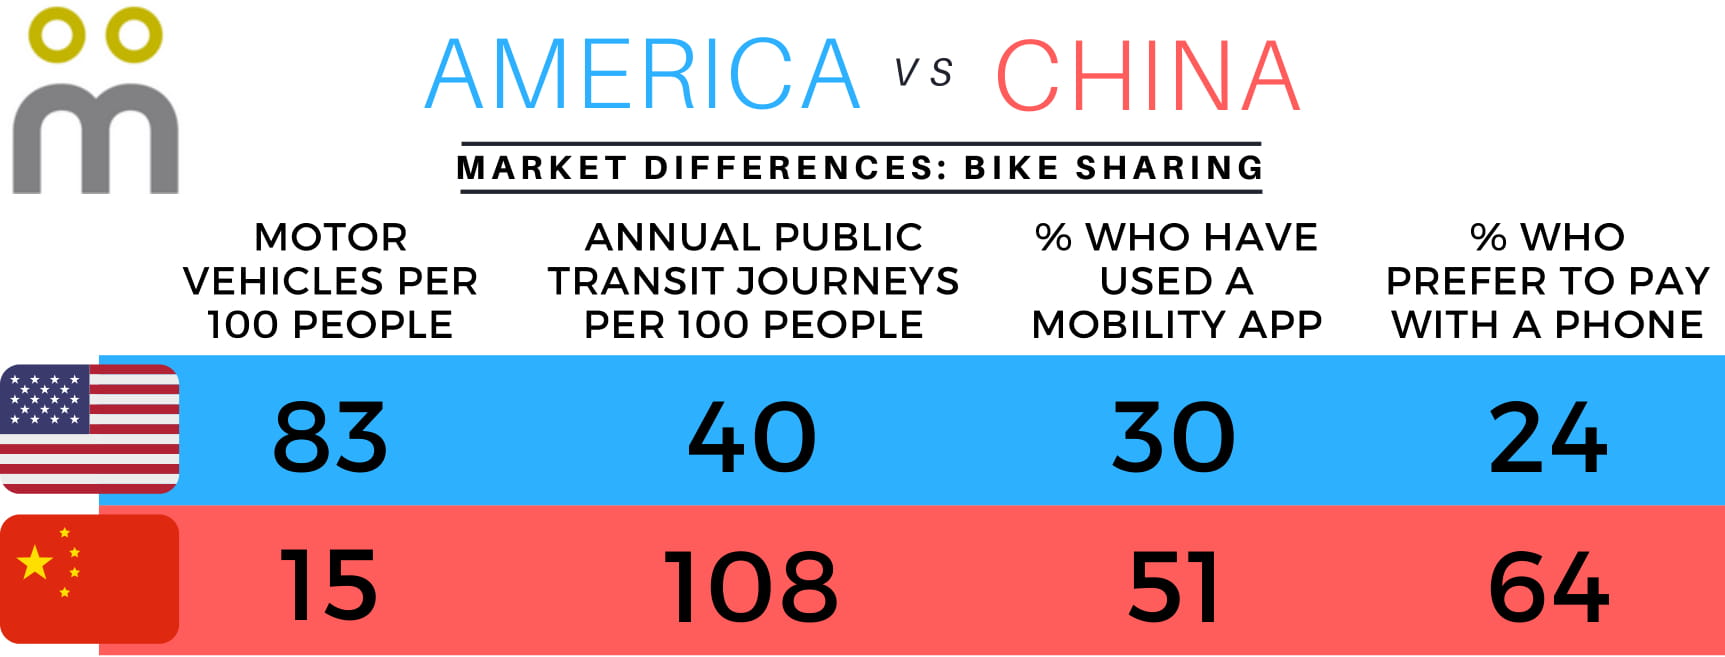 Mondato Infographic - Bike Sharing